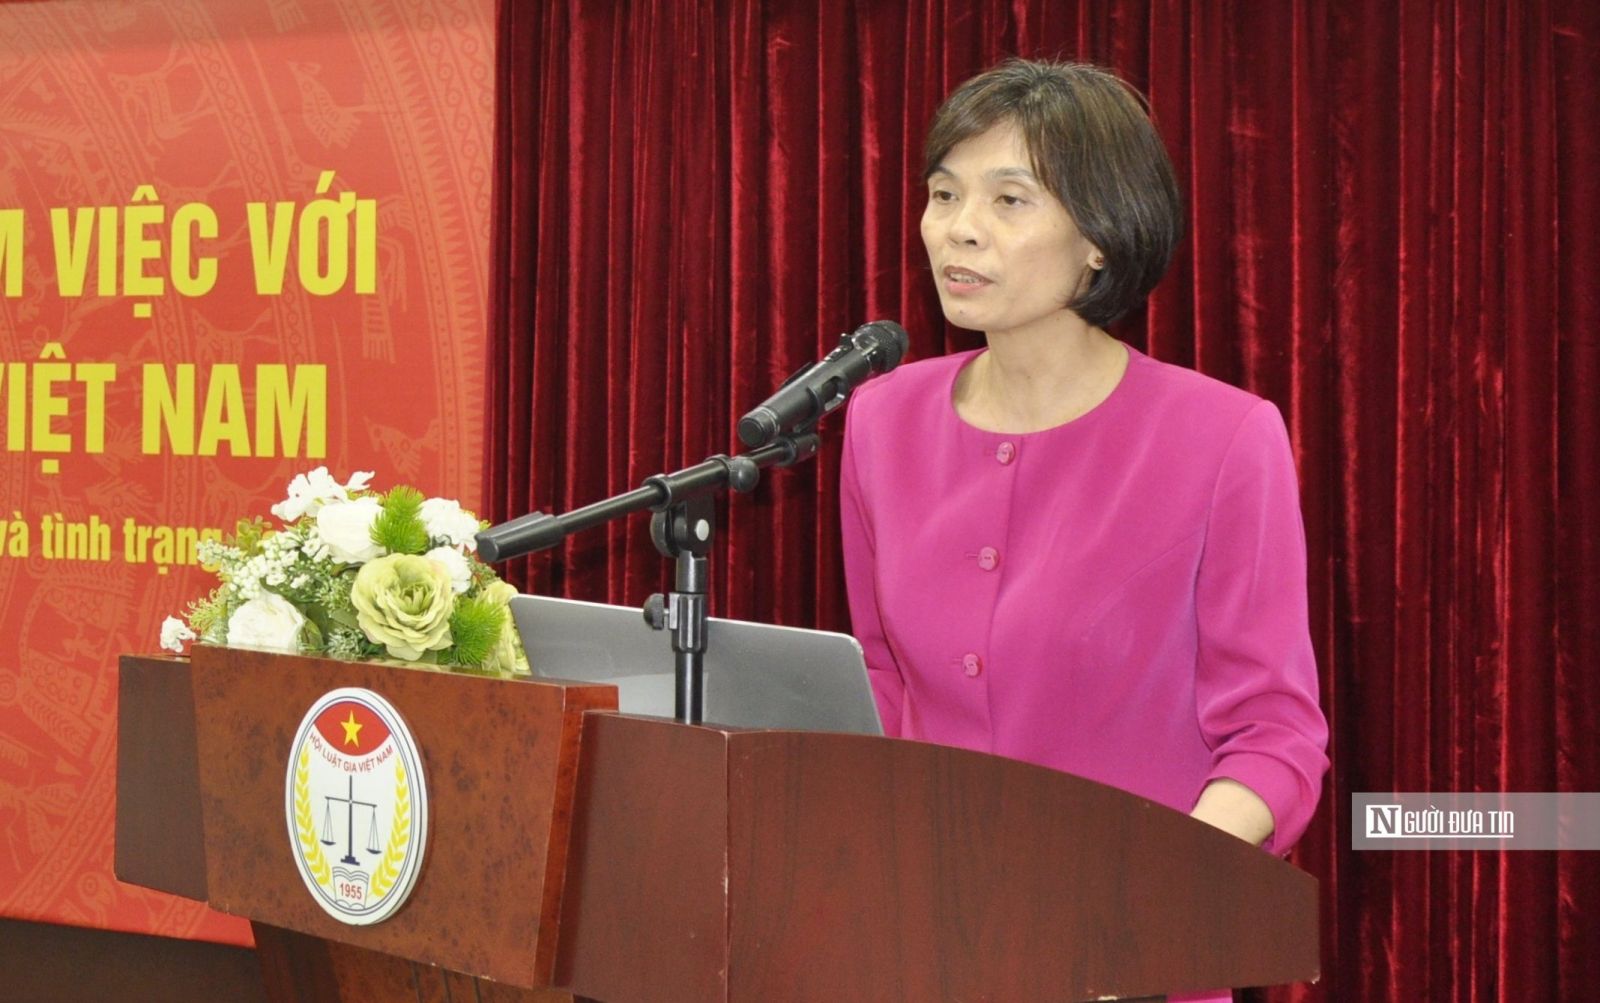 Đoàn công tác của Ban Chỉ đạo Đề án 103 làm việc với Đảng đoàn Hội Luật gia Việt Nam